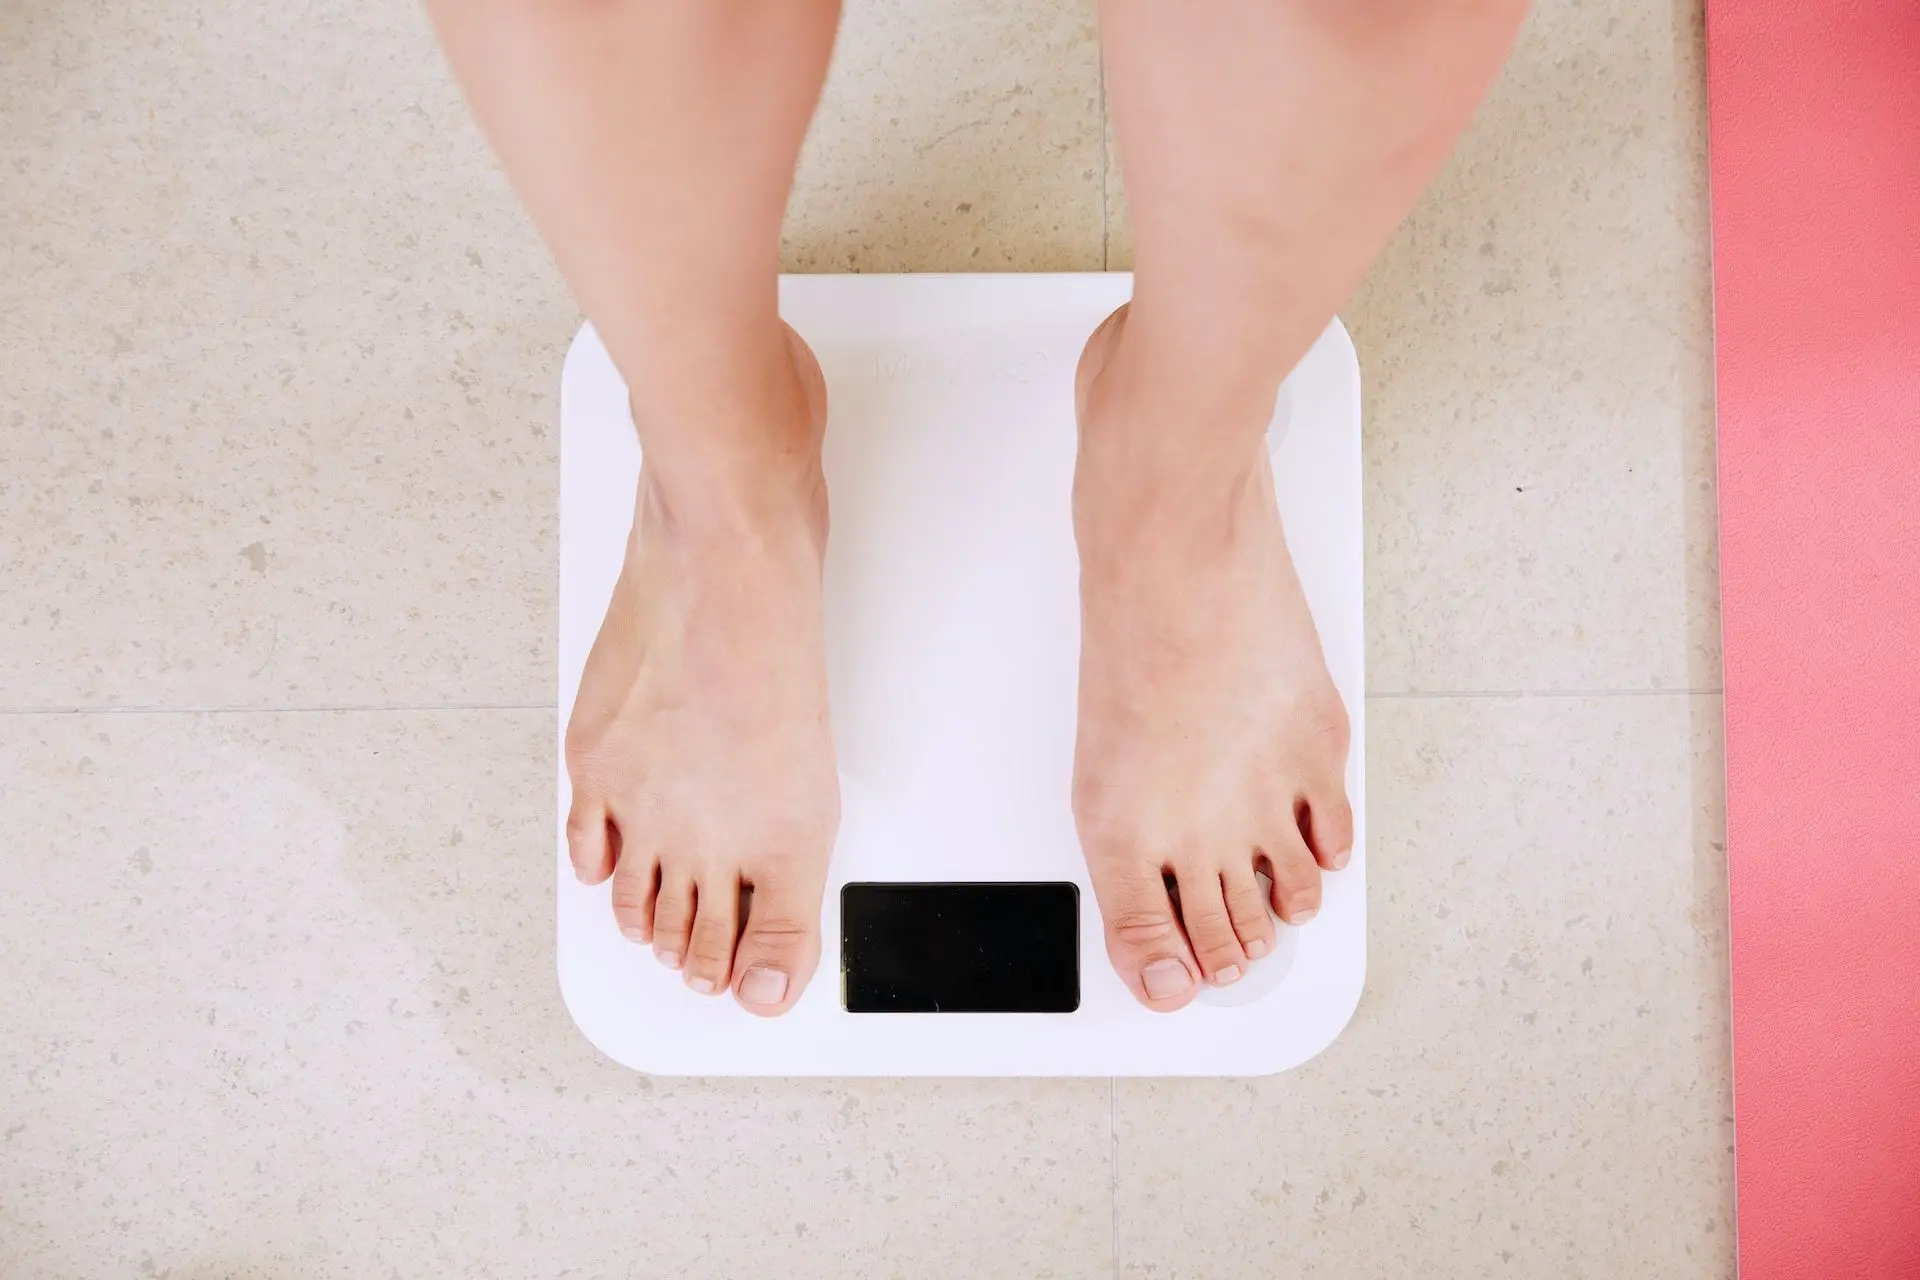 Втрата ваги може свідчити про те, що в організмі відбувається серйозне захворювання.